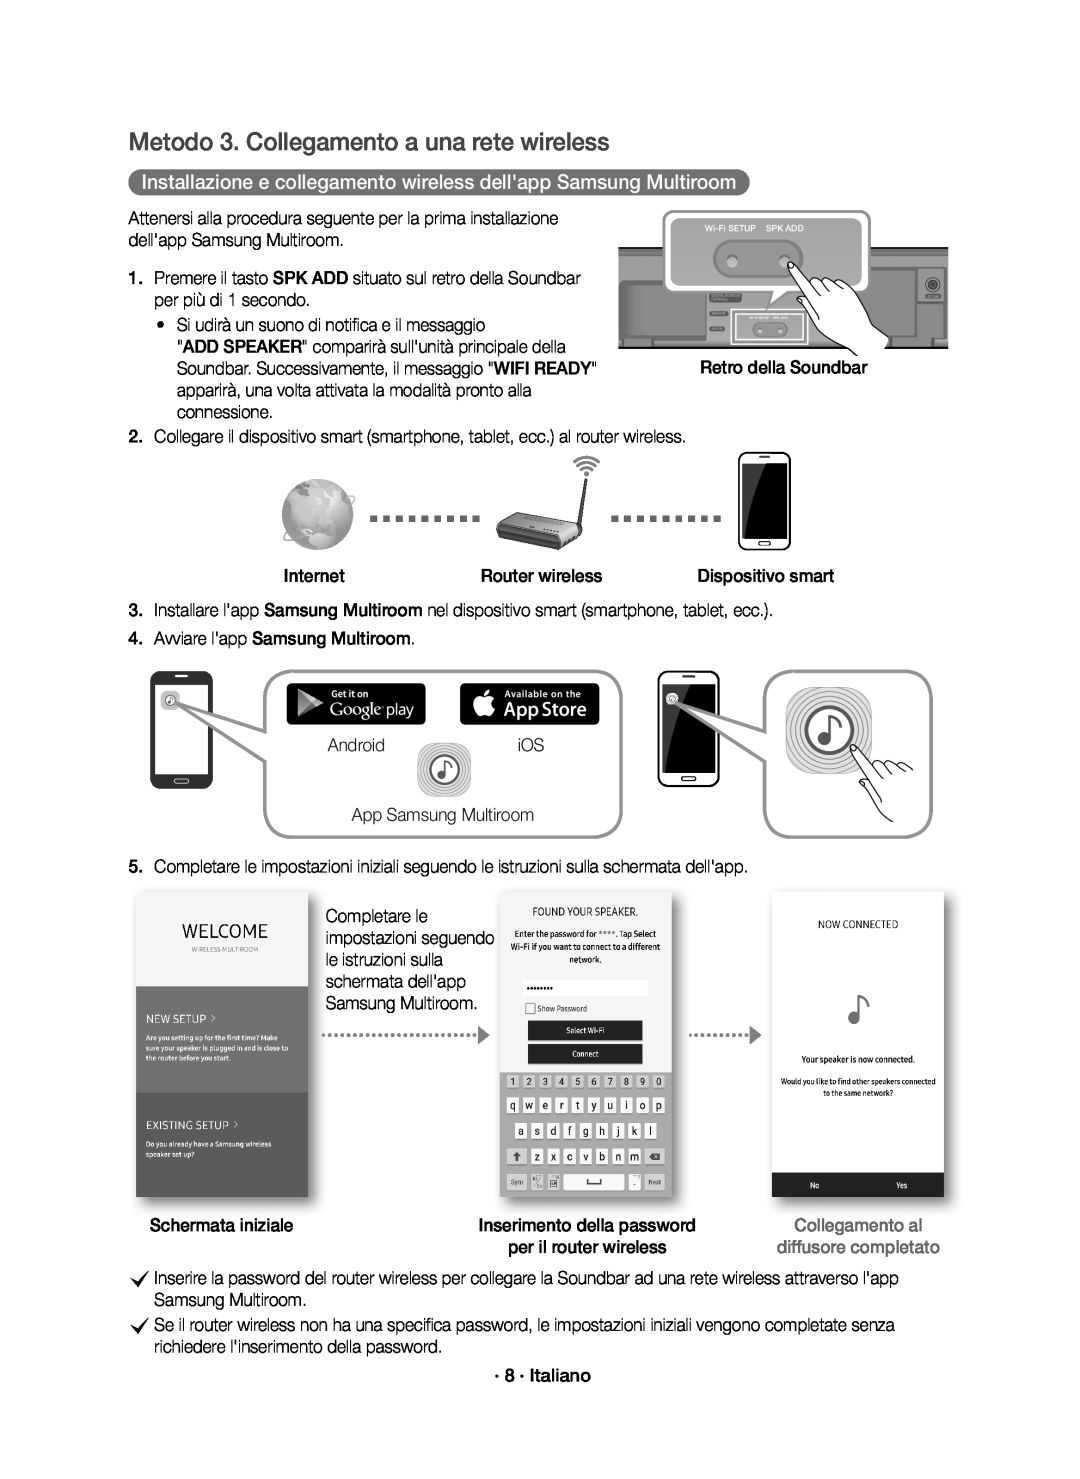 Samsung HW-K651/ZF, HW-K650/ZF Metodo 3. Collegamento a una rete wireless, dellapp Samsung Multiroom, per più di 1 secondo 